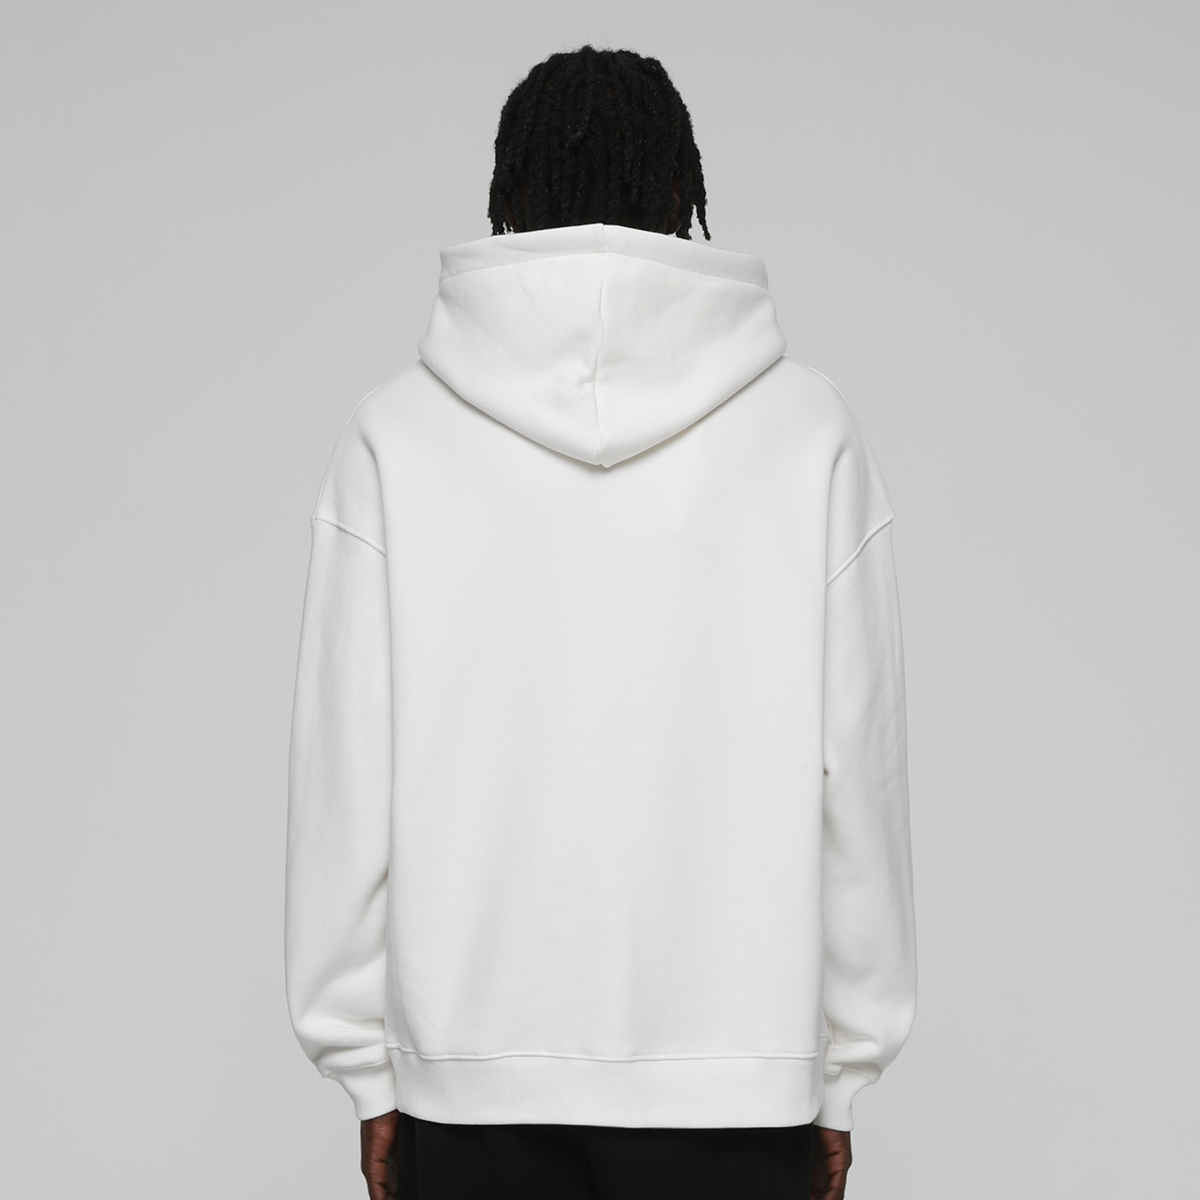 Low Lights Studios Boxer Zip-hoodie Hooded vesten Heren ecru maat: S beschikbare maaten:S M L XL